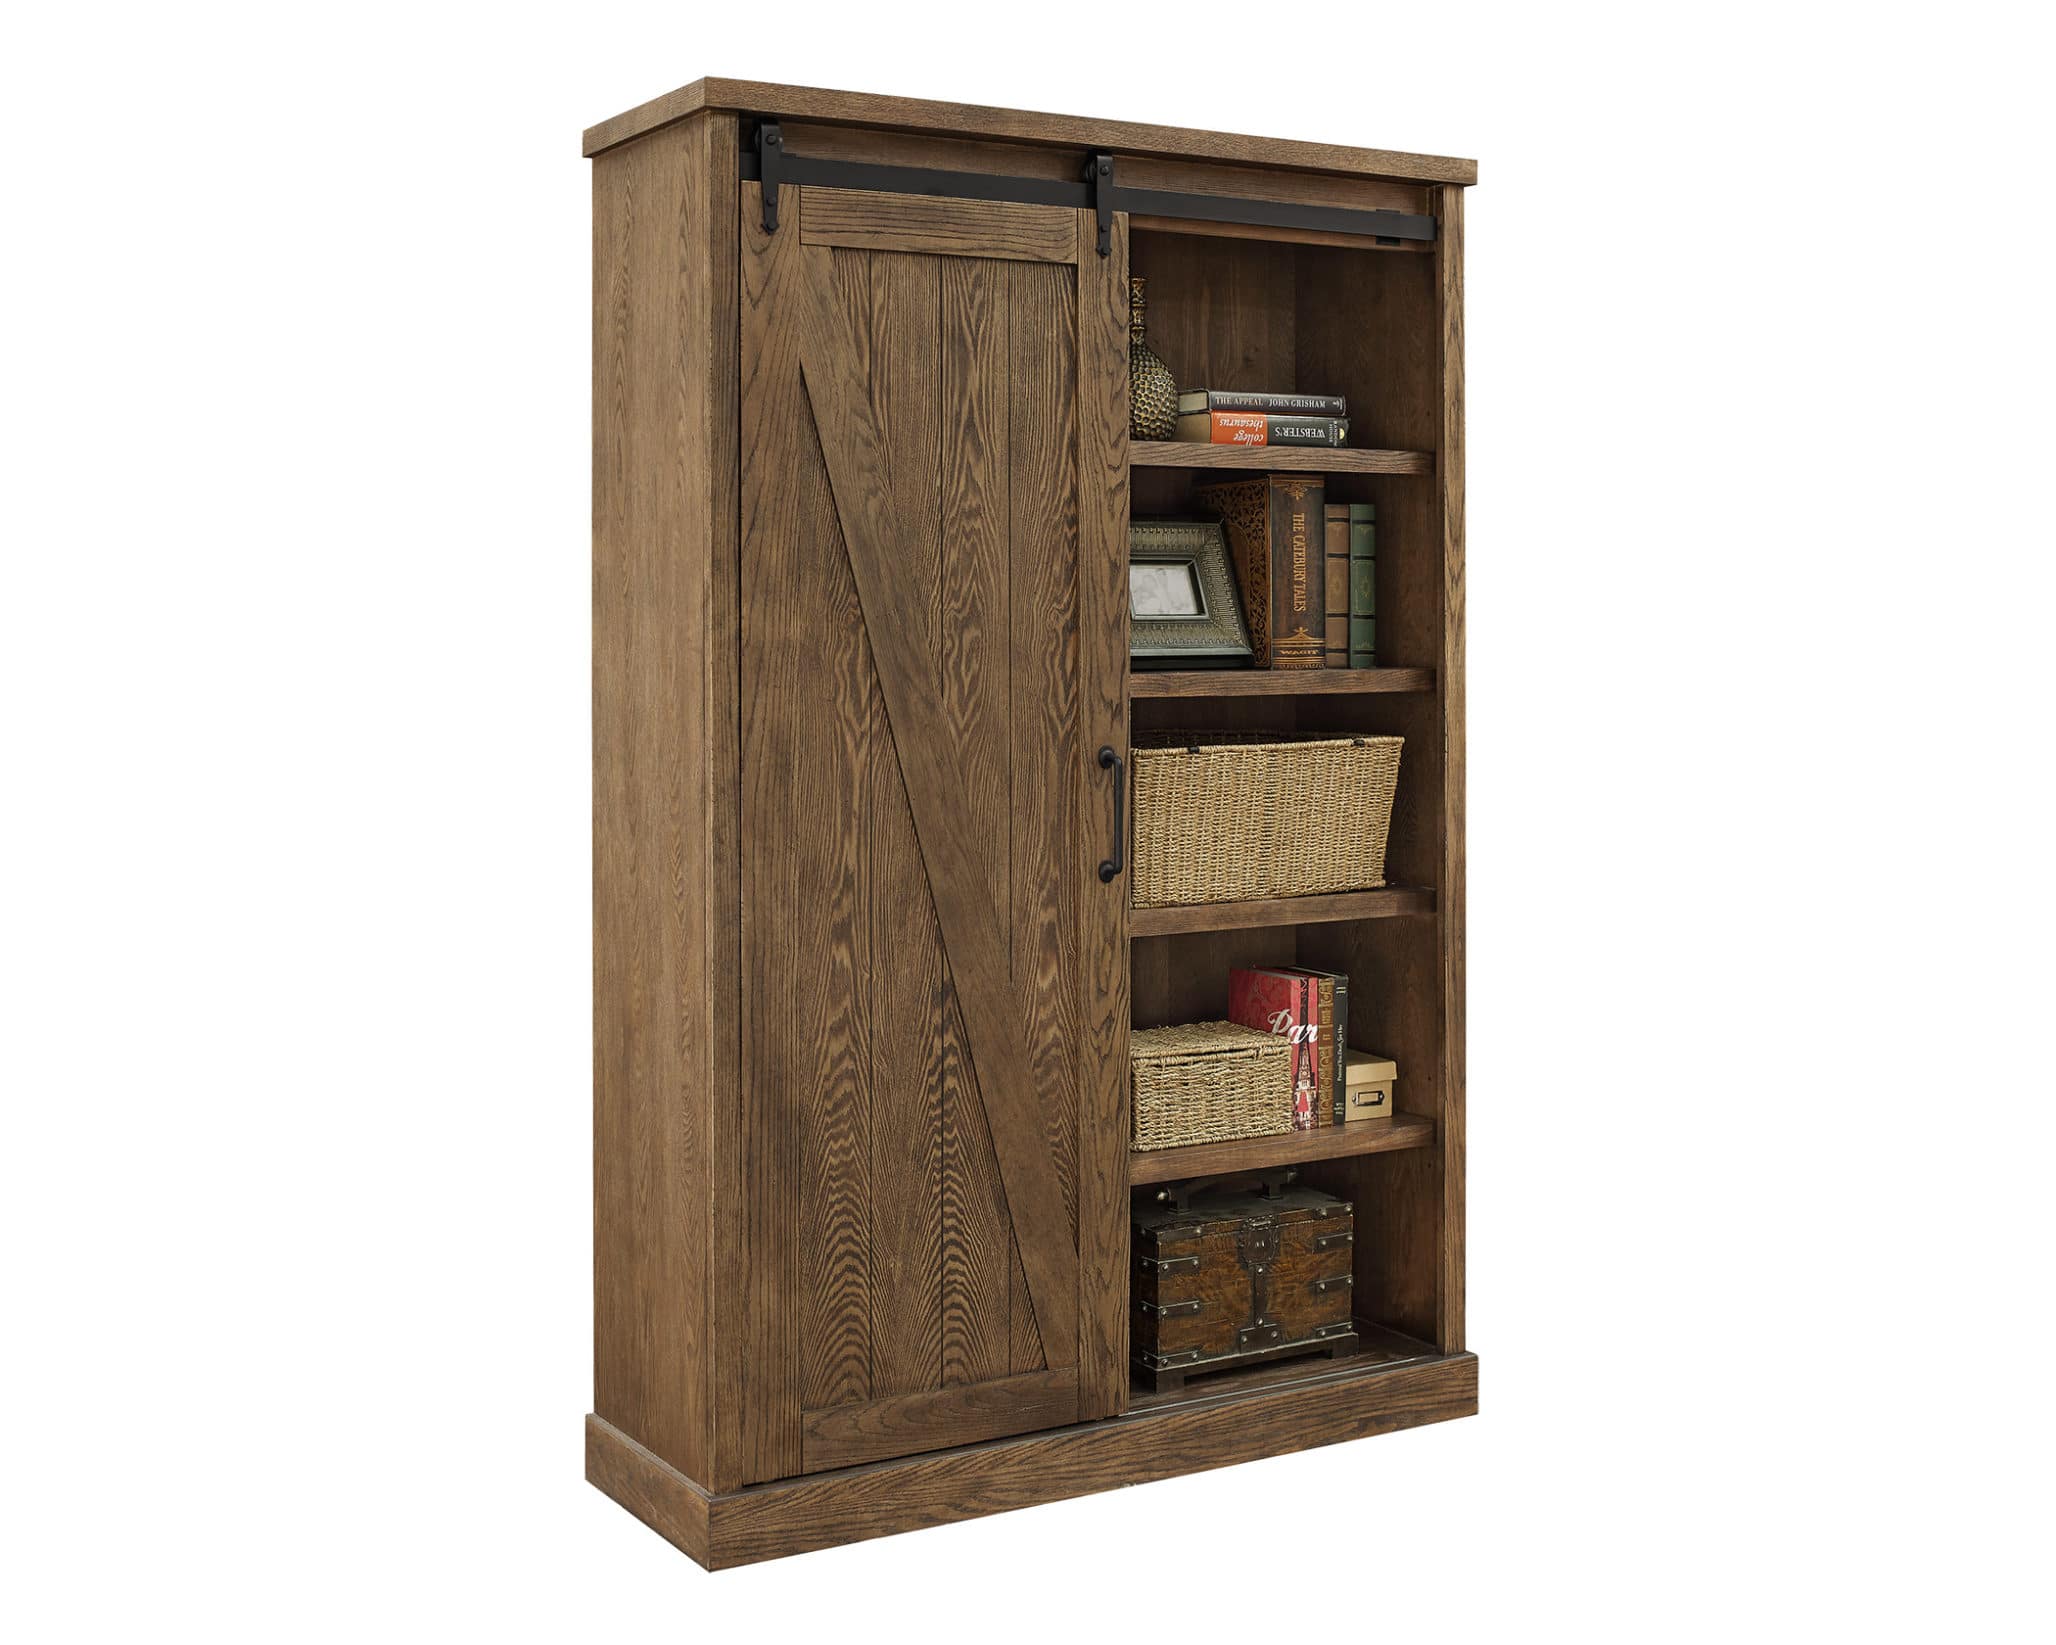 URBNLIVING Oak 6 Tier Bookshelf With 2 Doors Cupboard 